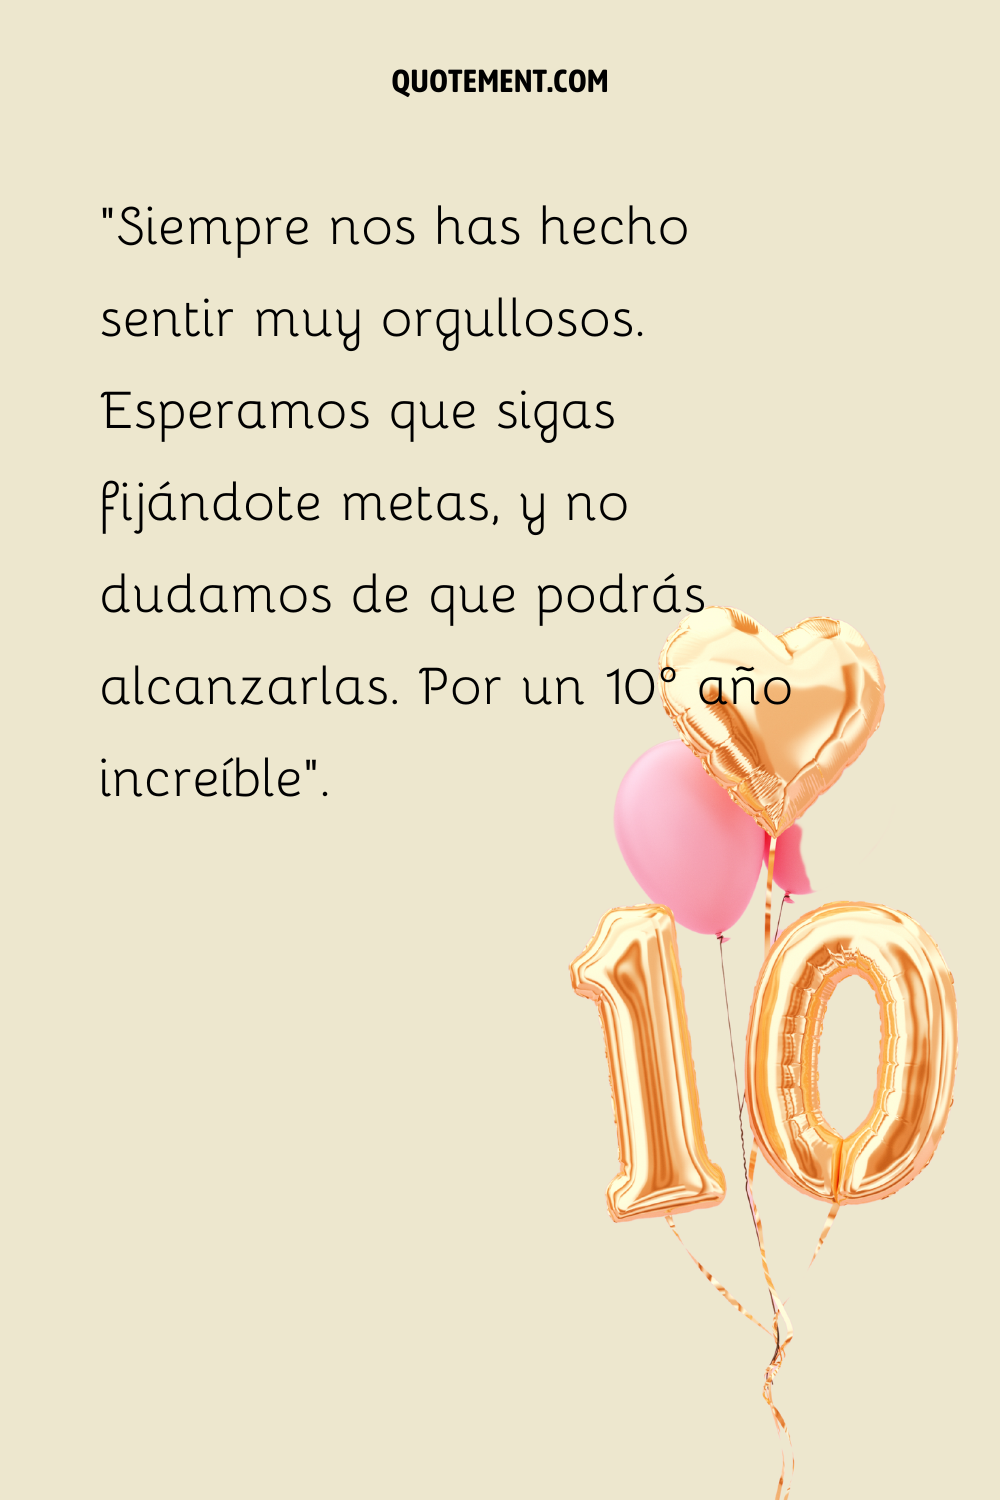 Un globo dorado con el número "10", un globo dorado con forma de corazón y un globo redondo rosa sobre fondo beige